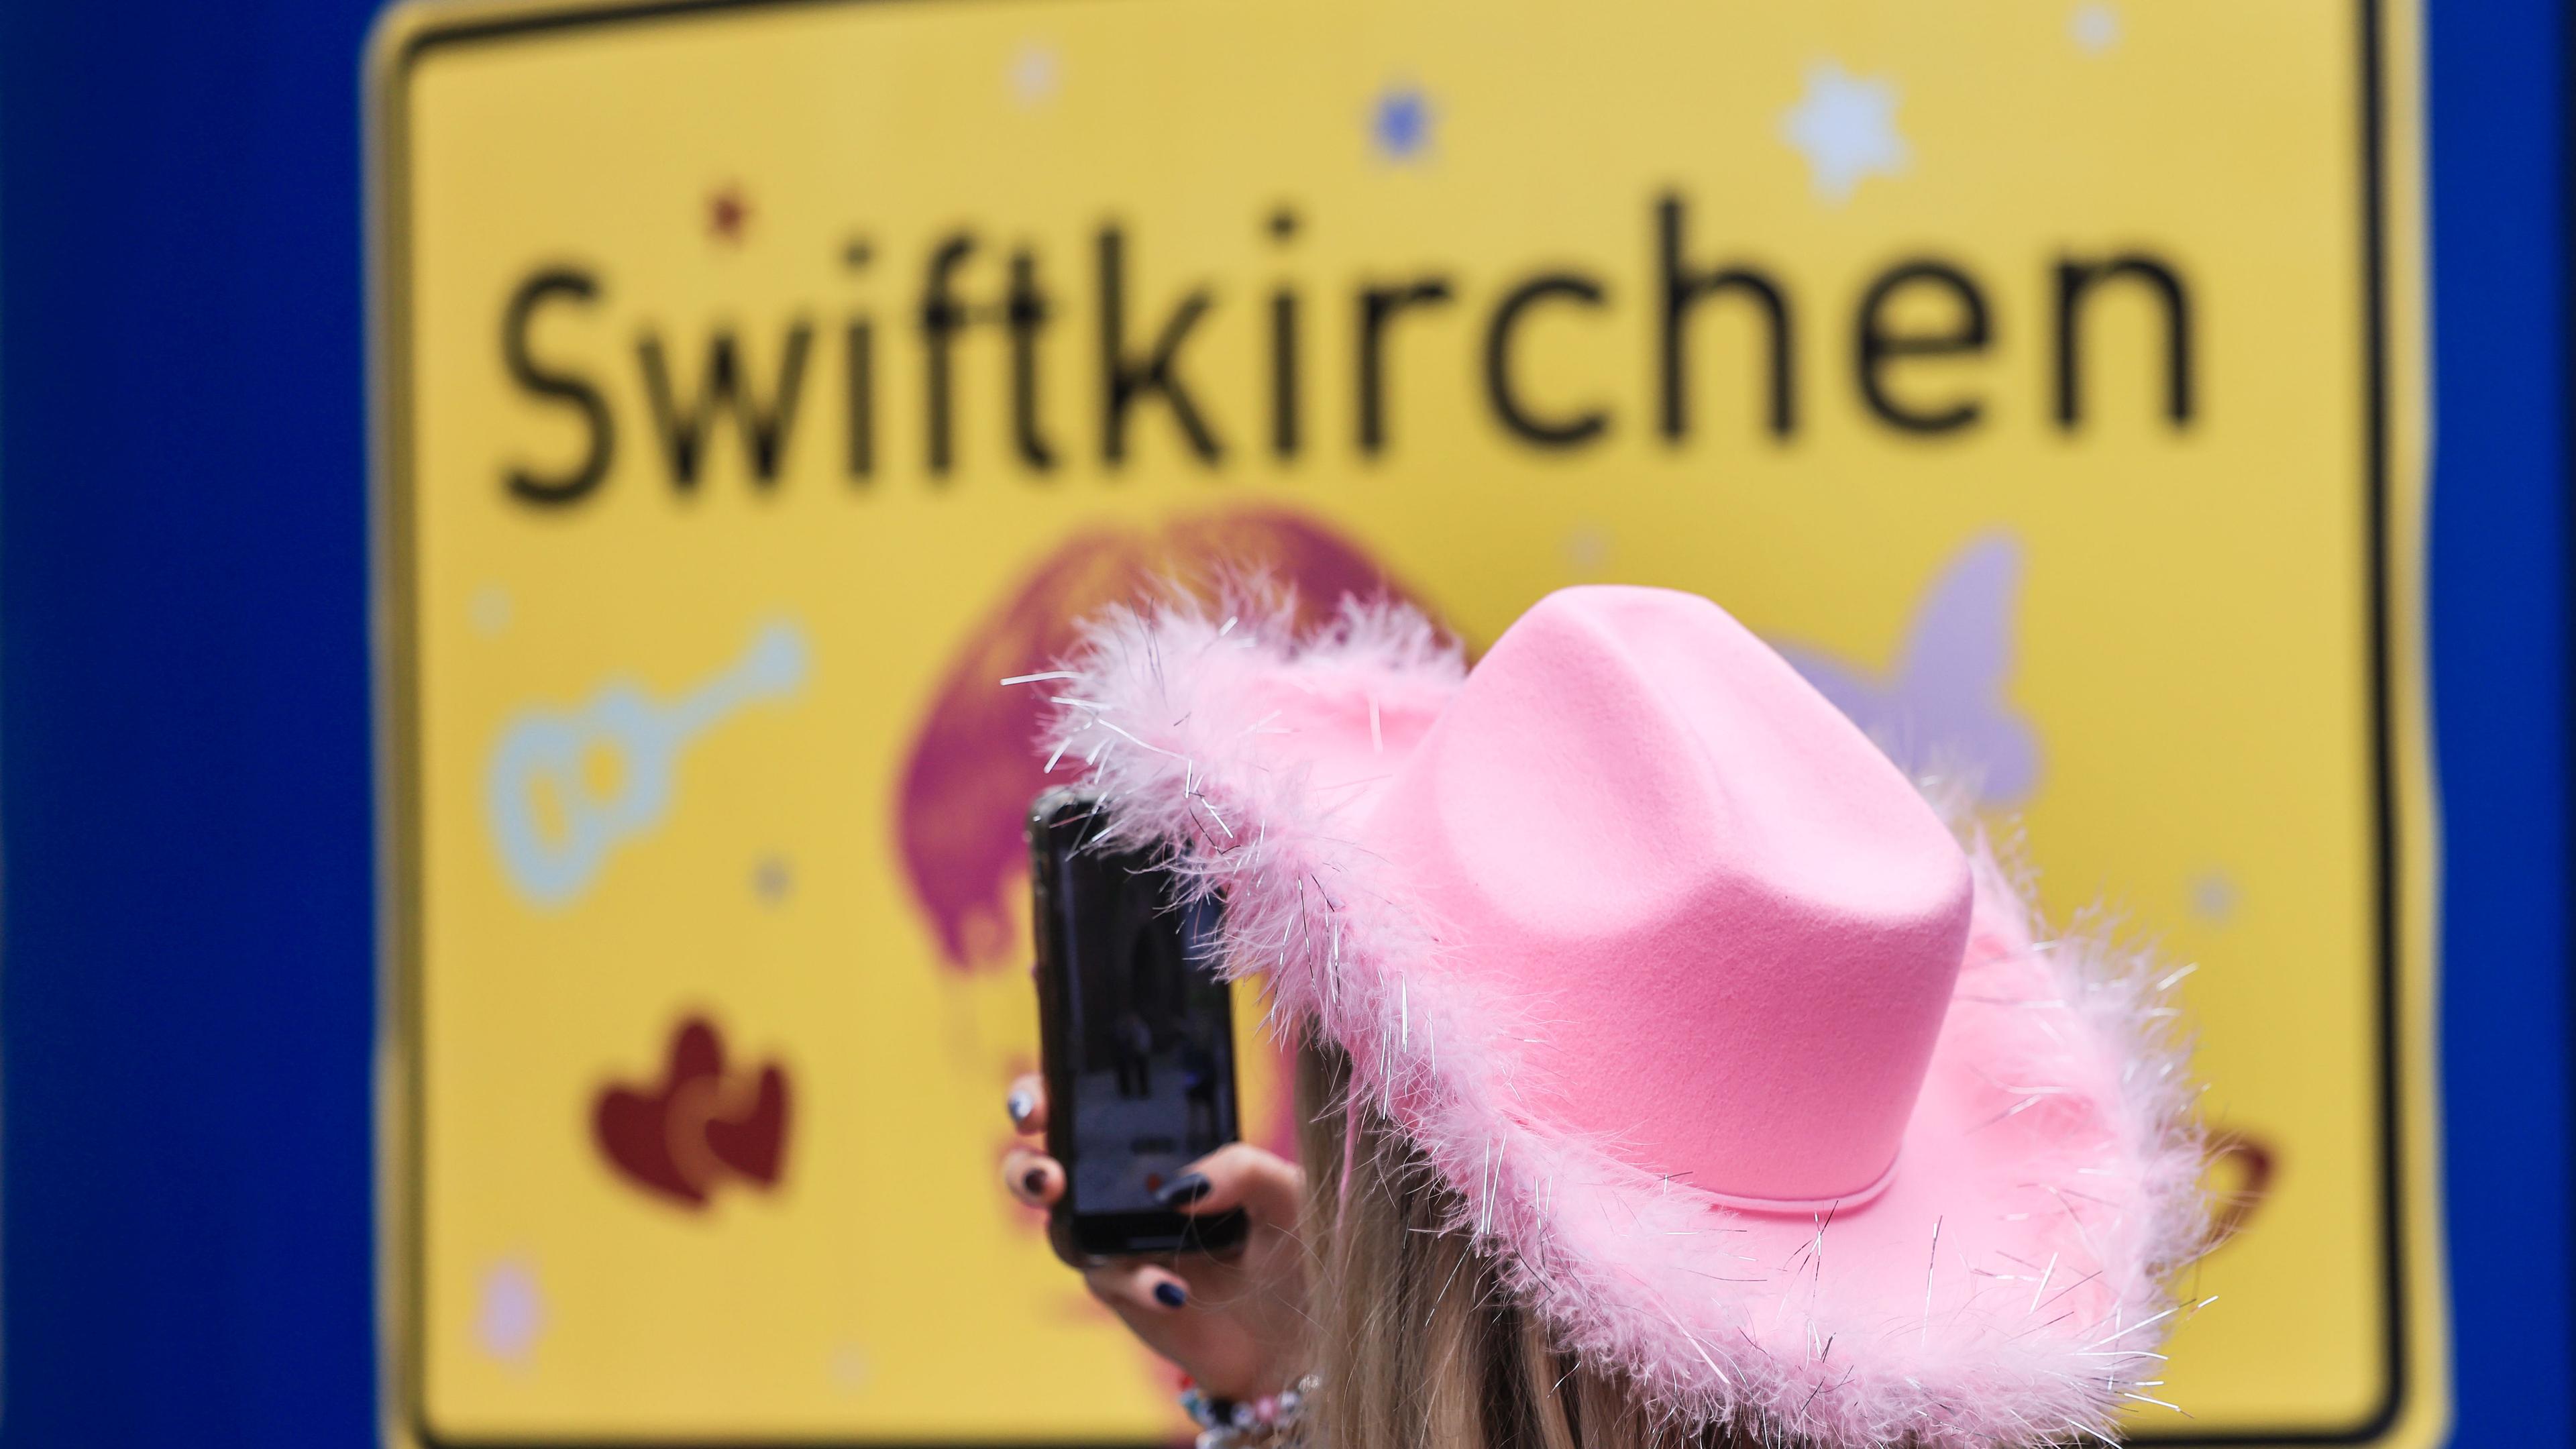 "Swiftie" vor Stadtschild mit der Aufschrift "Swiftkirchen"